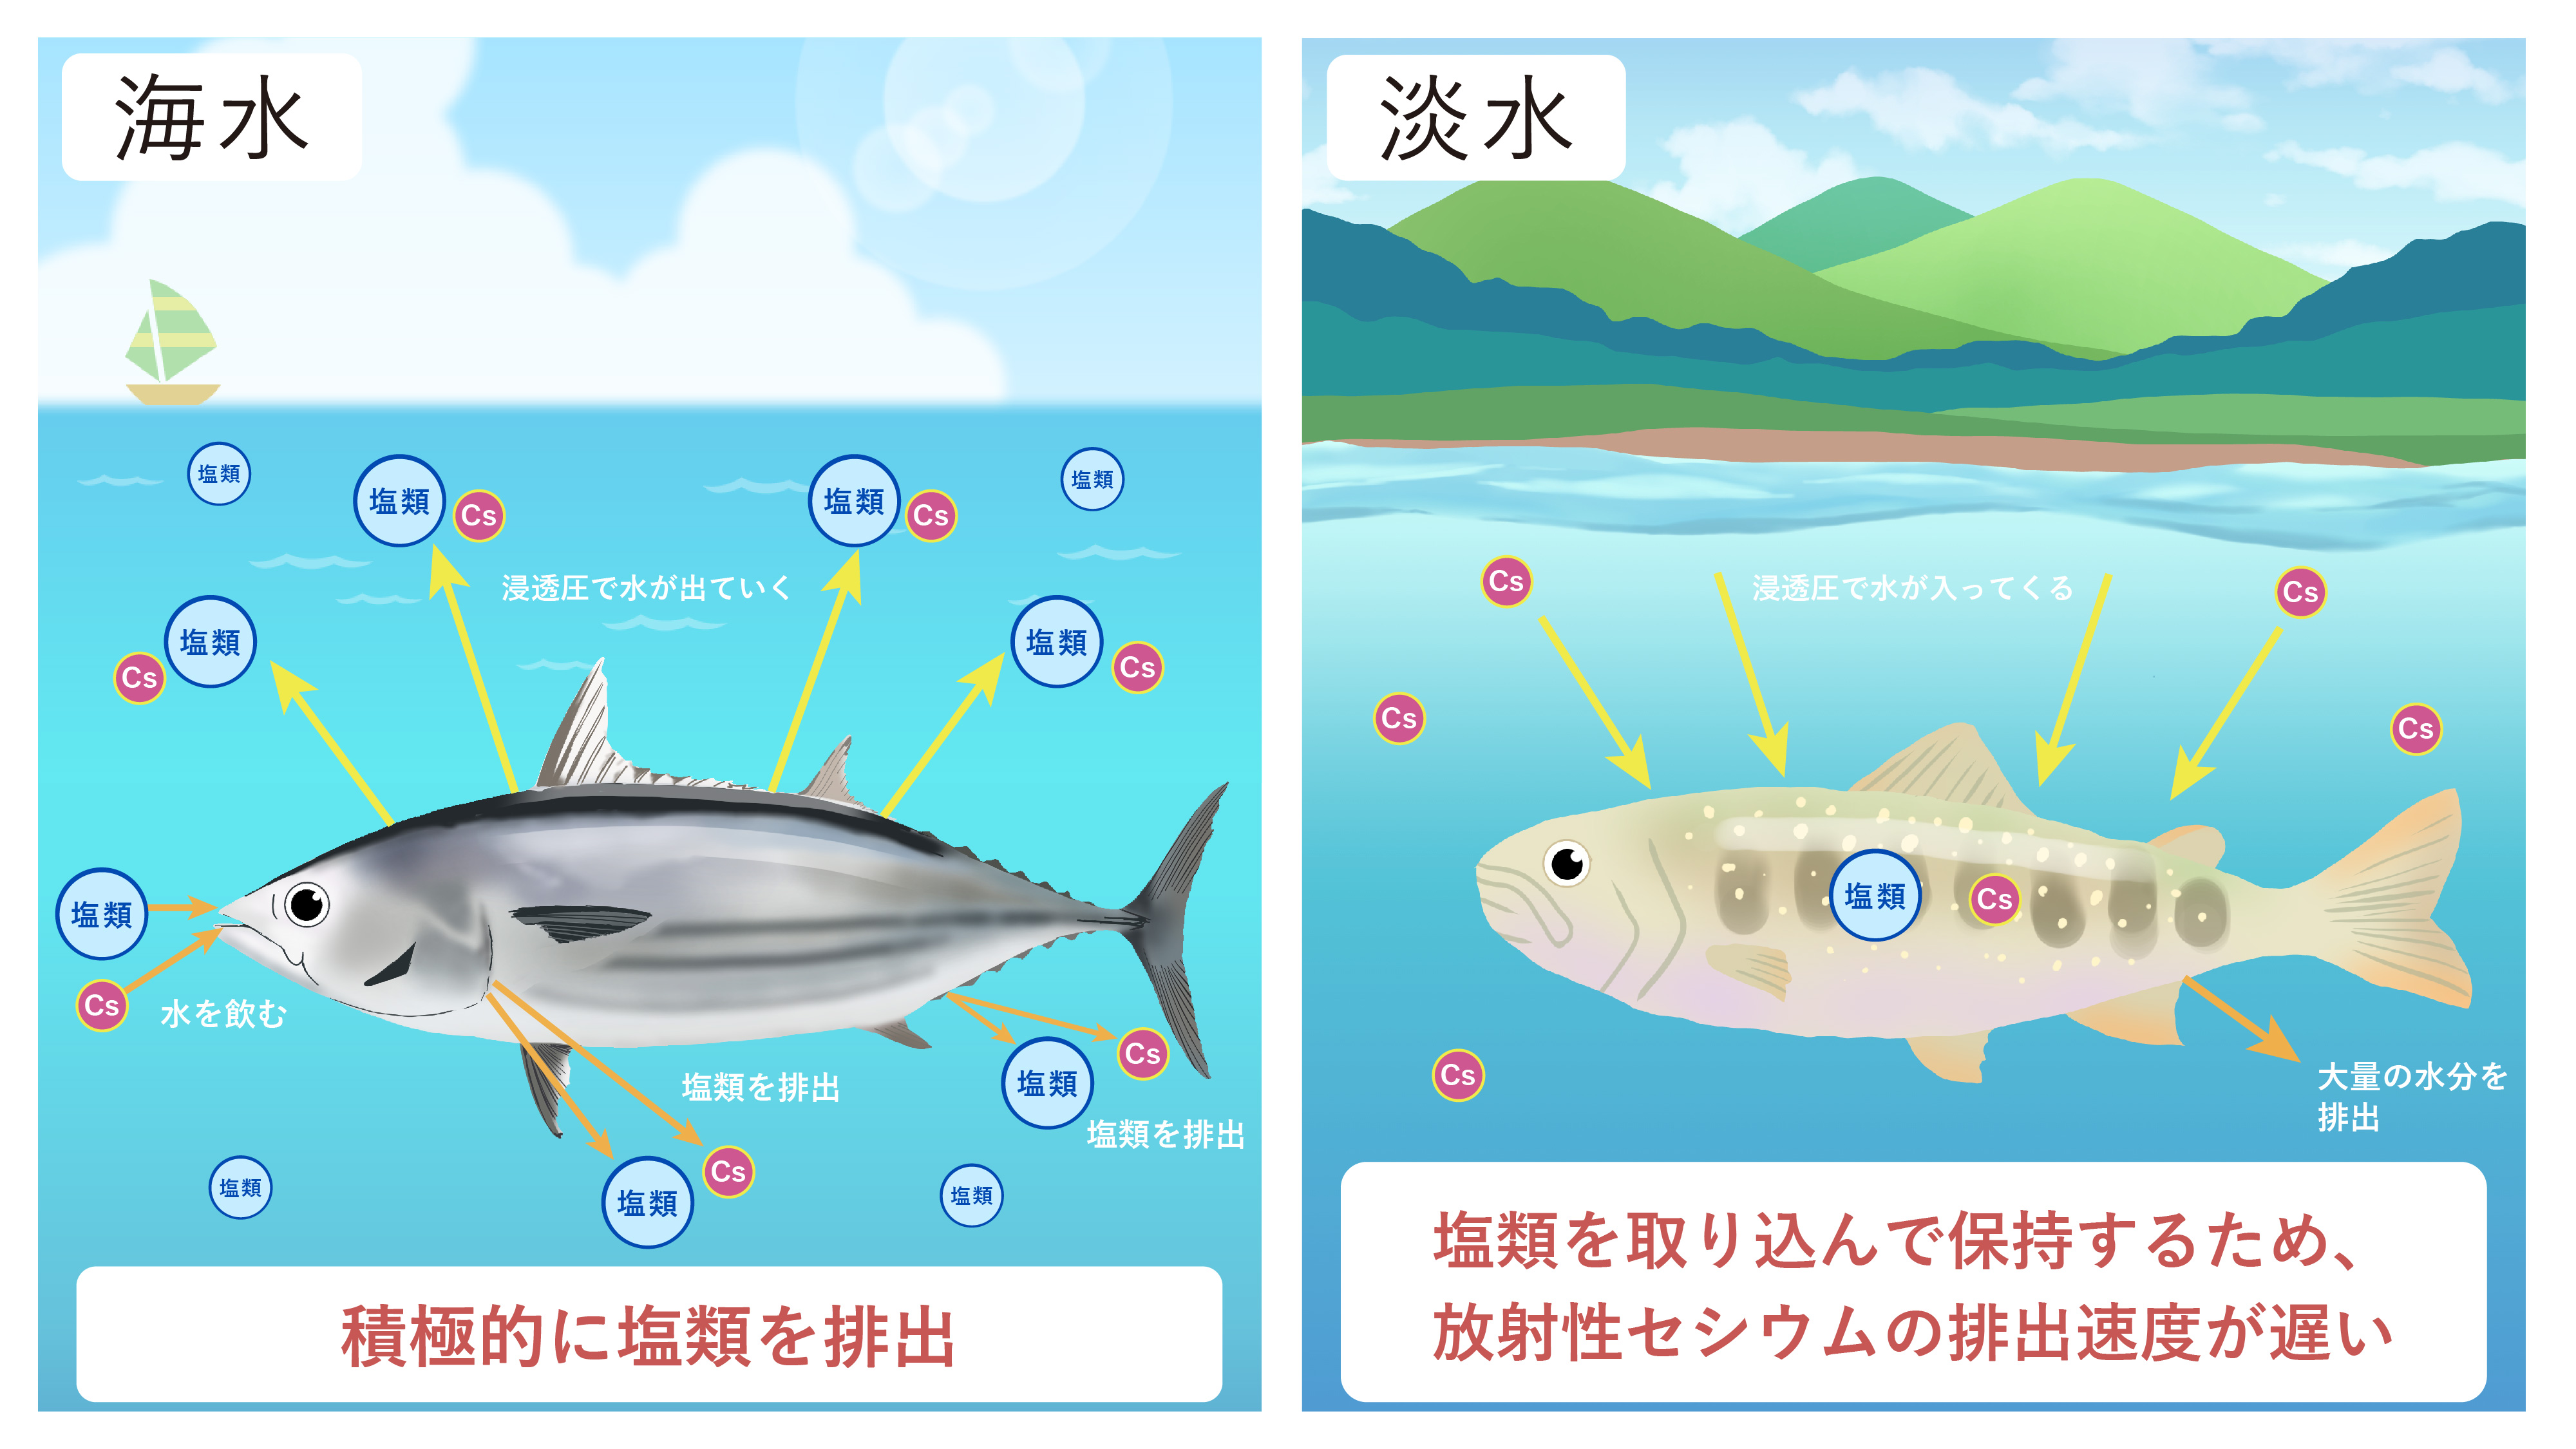 海水魚と淡水魚における放射性セシウム排出の違いを示したイラスト